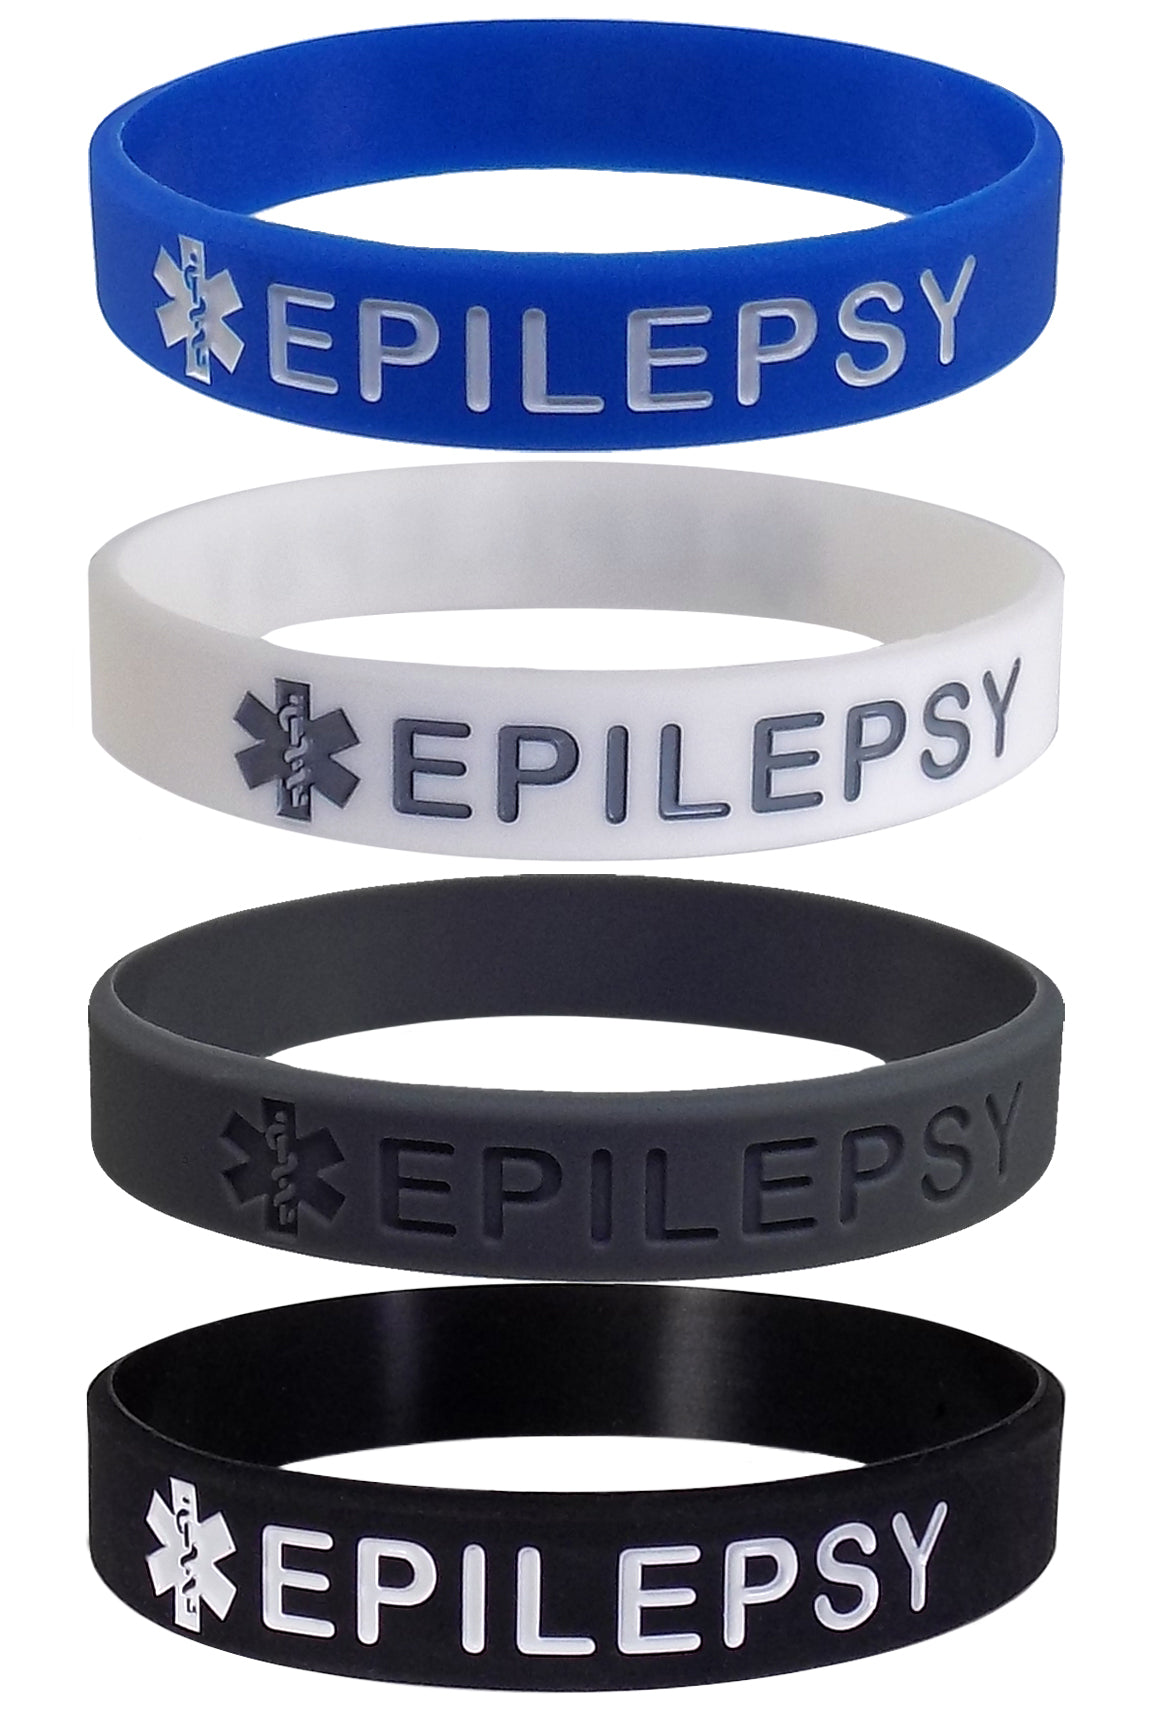 2x SEIZURE disorder non epileptic epilepsy Wristband MEDICAL AWARENESS ALERT  BRACELET  Amazoncomau Clothing Shoes  Accessories